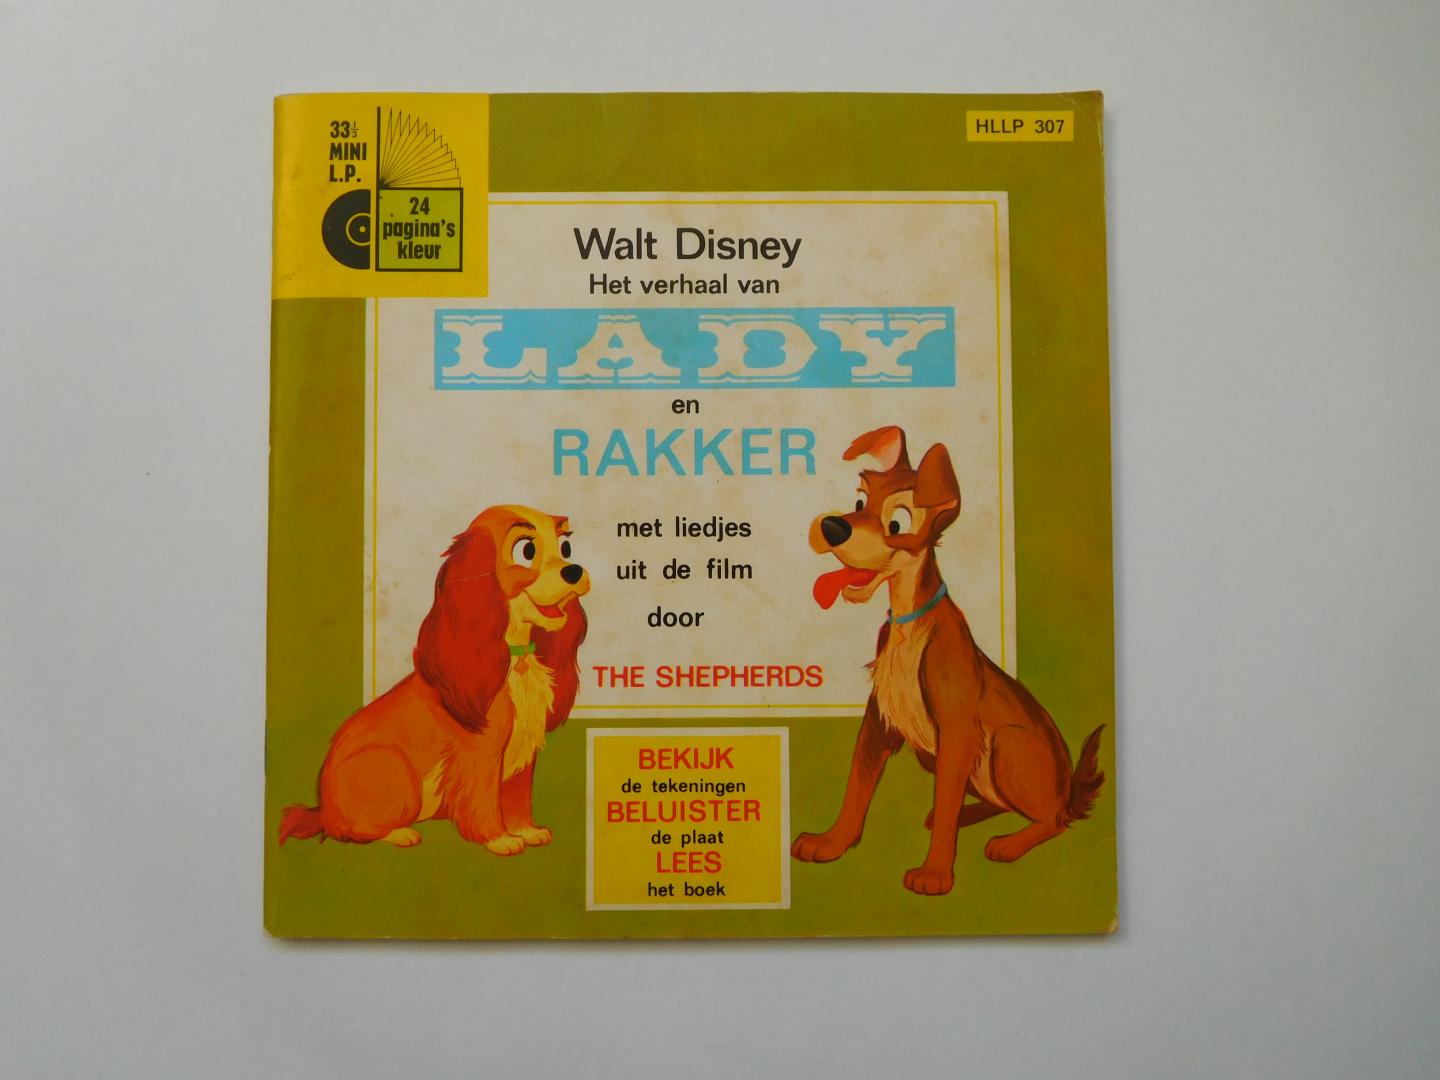 Disney, Walt - Het verhaal van Lady en Rakker met liedjes uit de film door The Shepherds op een bijbehorend singletje